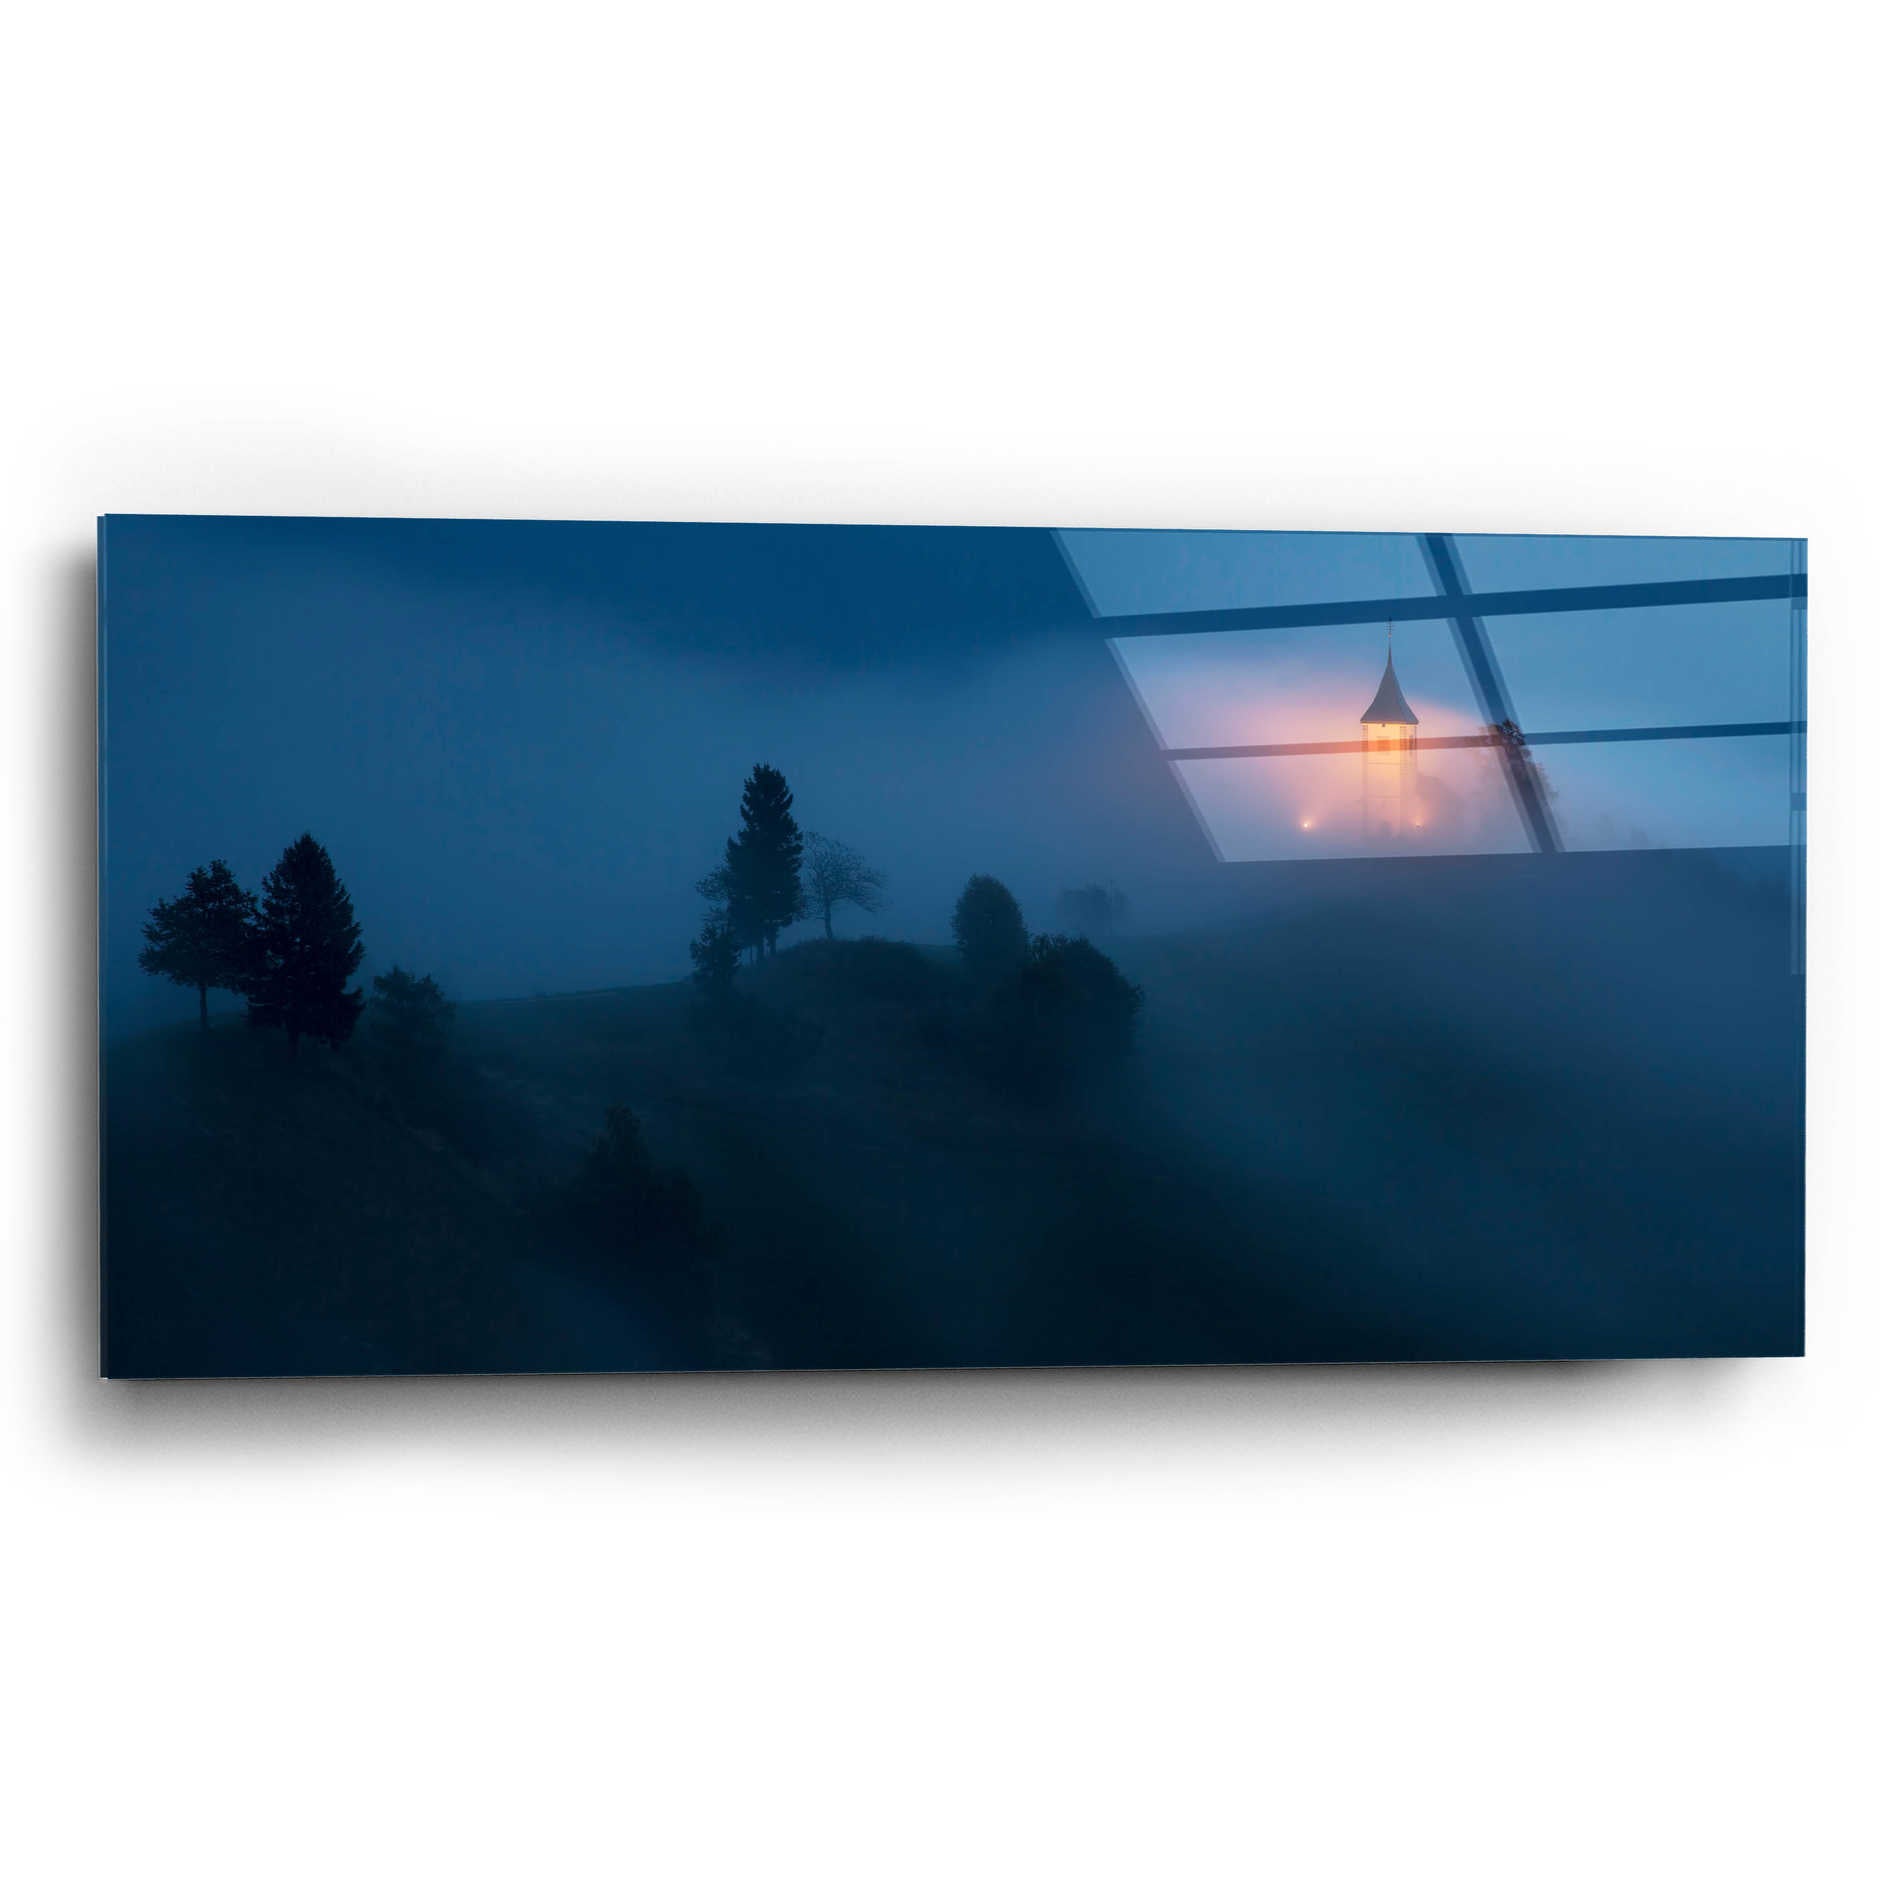 Epic Art 'Fog Rolls In' by Larry Malvin, Acrylic Glass Wall Art,24x12